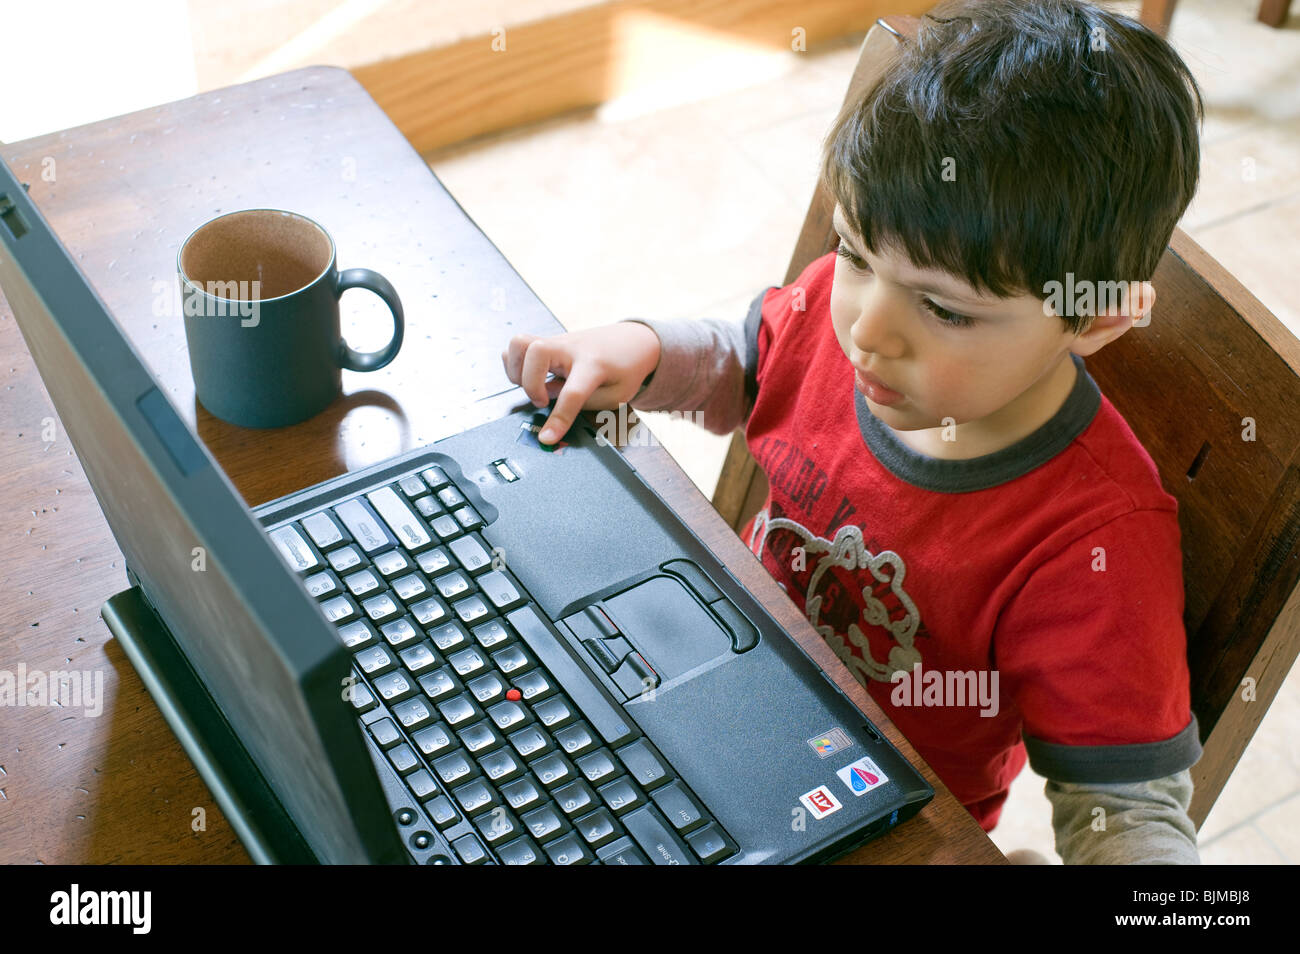 4 y 1/2 año viejo niño hispano navega por la web en su ordenador portátil de su mesa de la cocina. Modelo liberado. Foto de stock